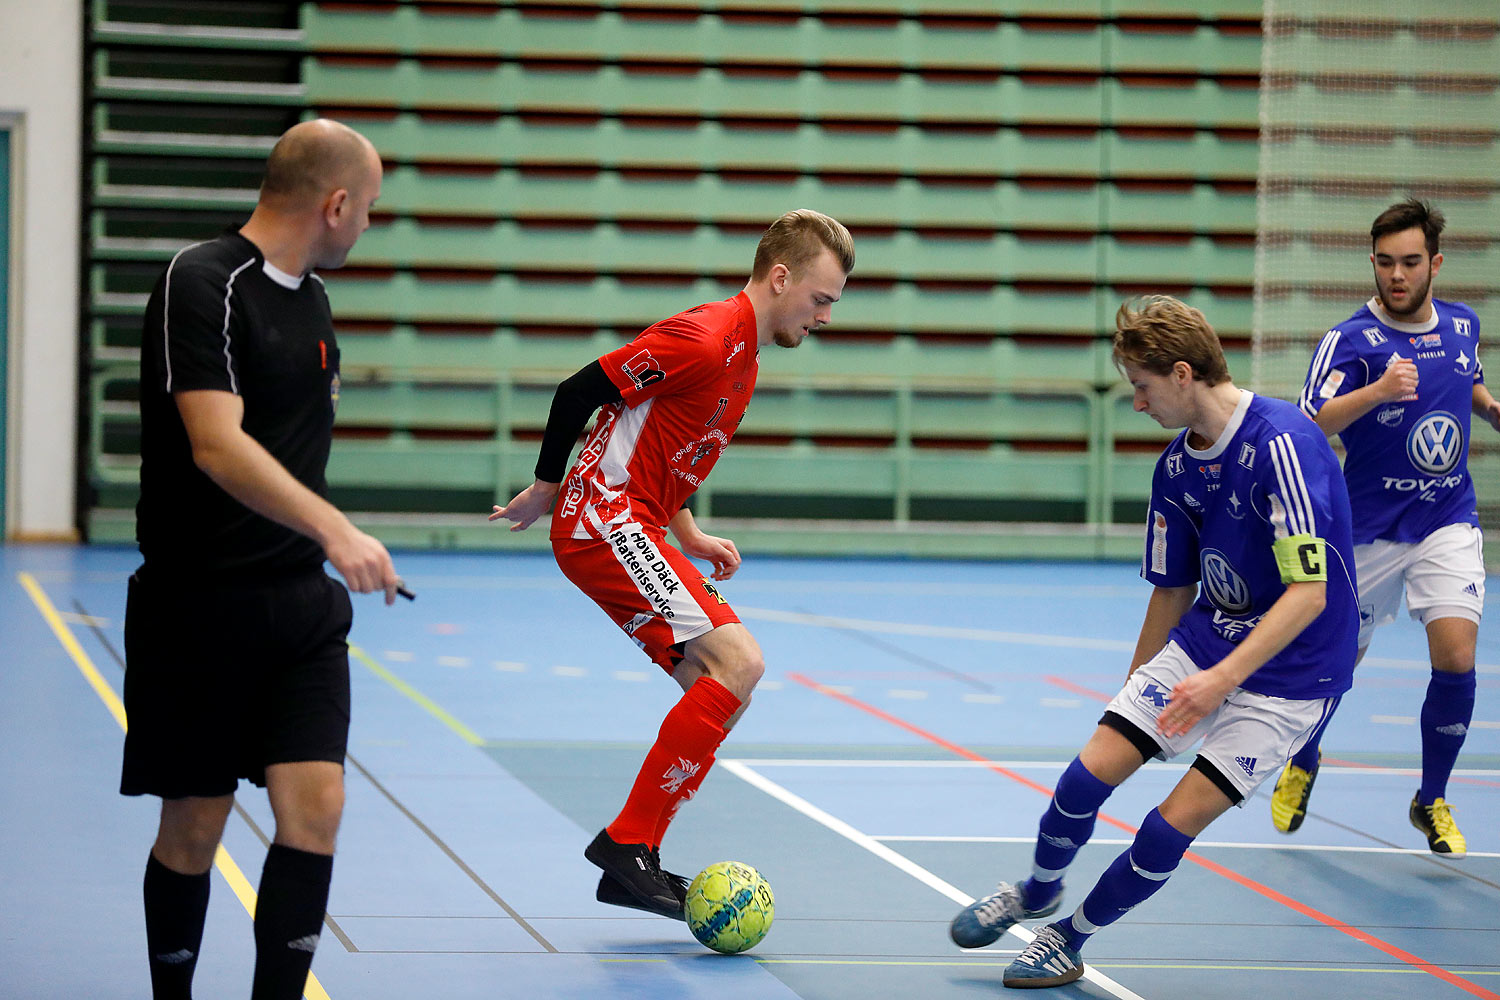 Skövde Futsalcup Herrjuniorer IFK Falköping FF-Töreboda IK,herr,Arena Skövde,Skövde,Sverige,Skövde Futsalcup 2016,Futsal,2016,142570